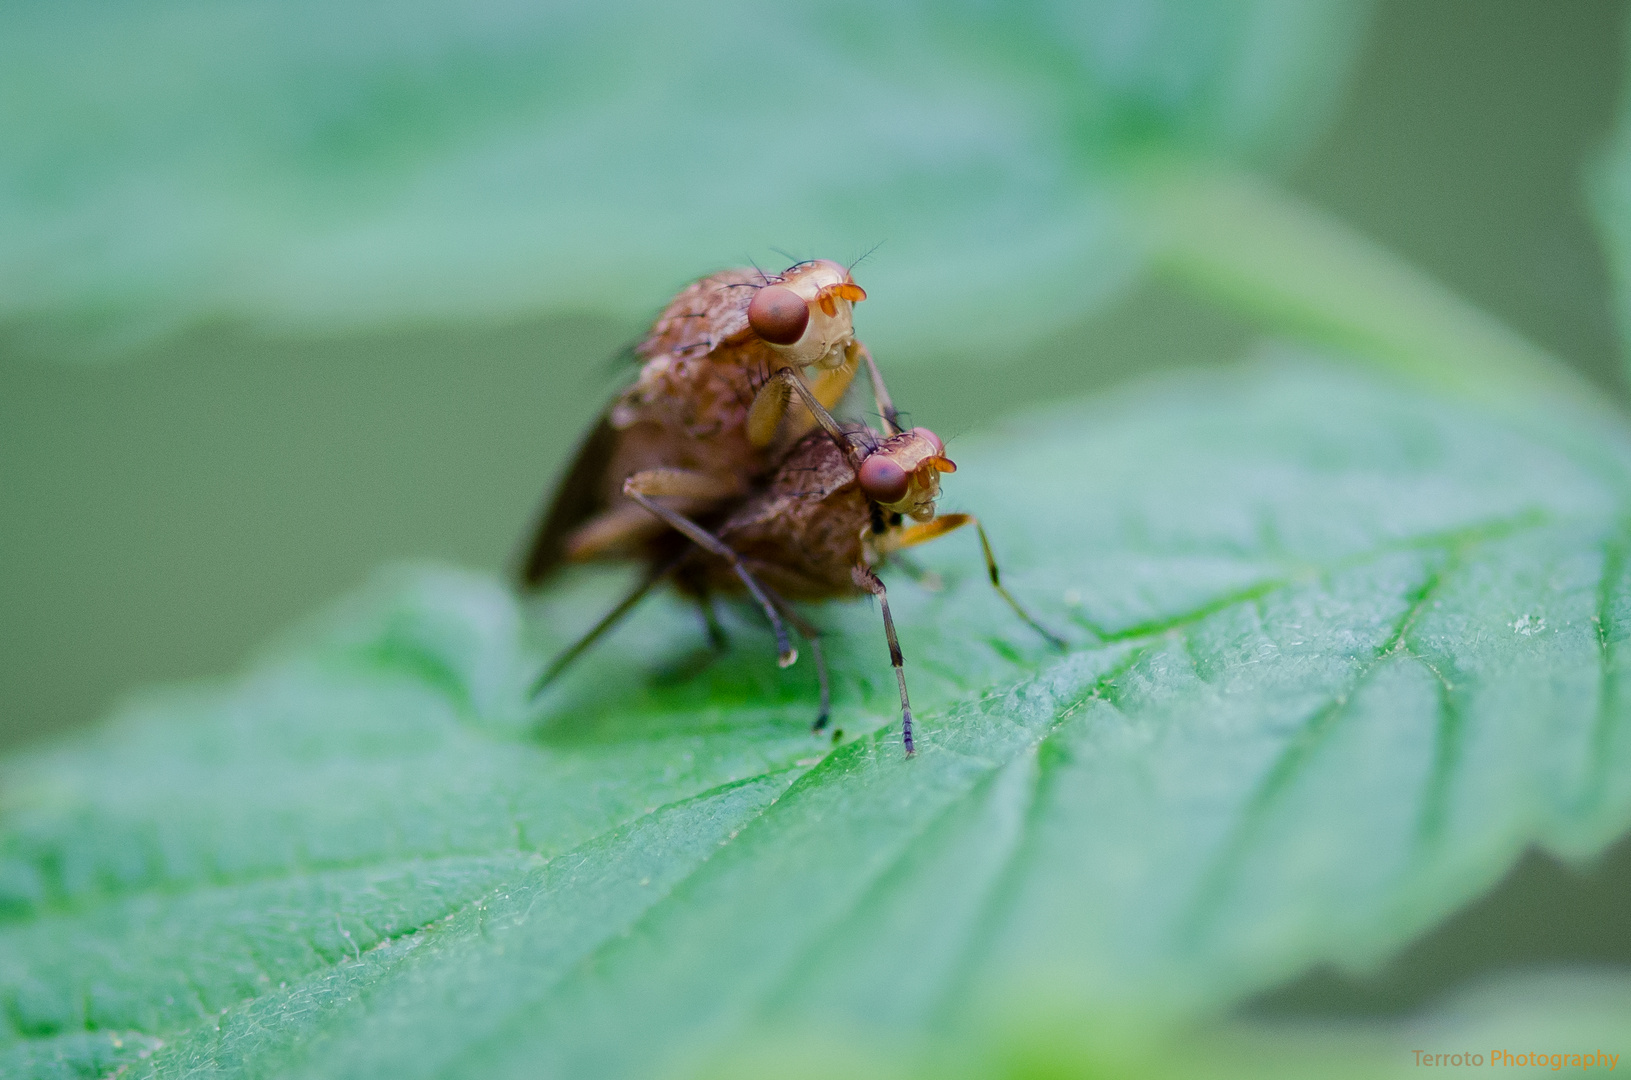 Huckepack in der Insektenwelt